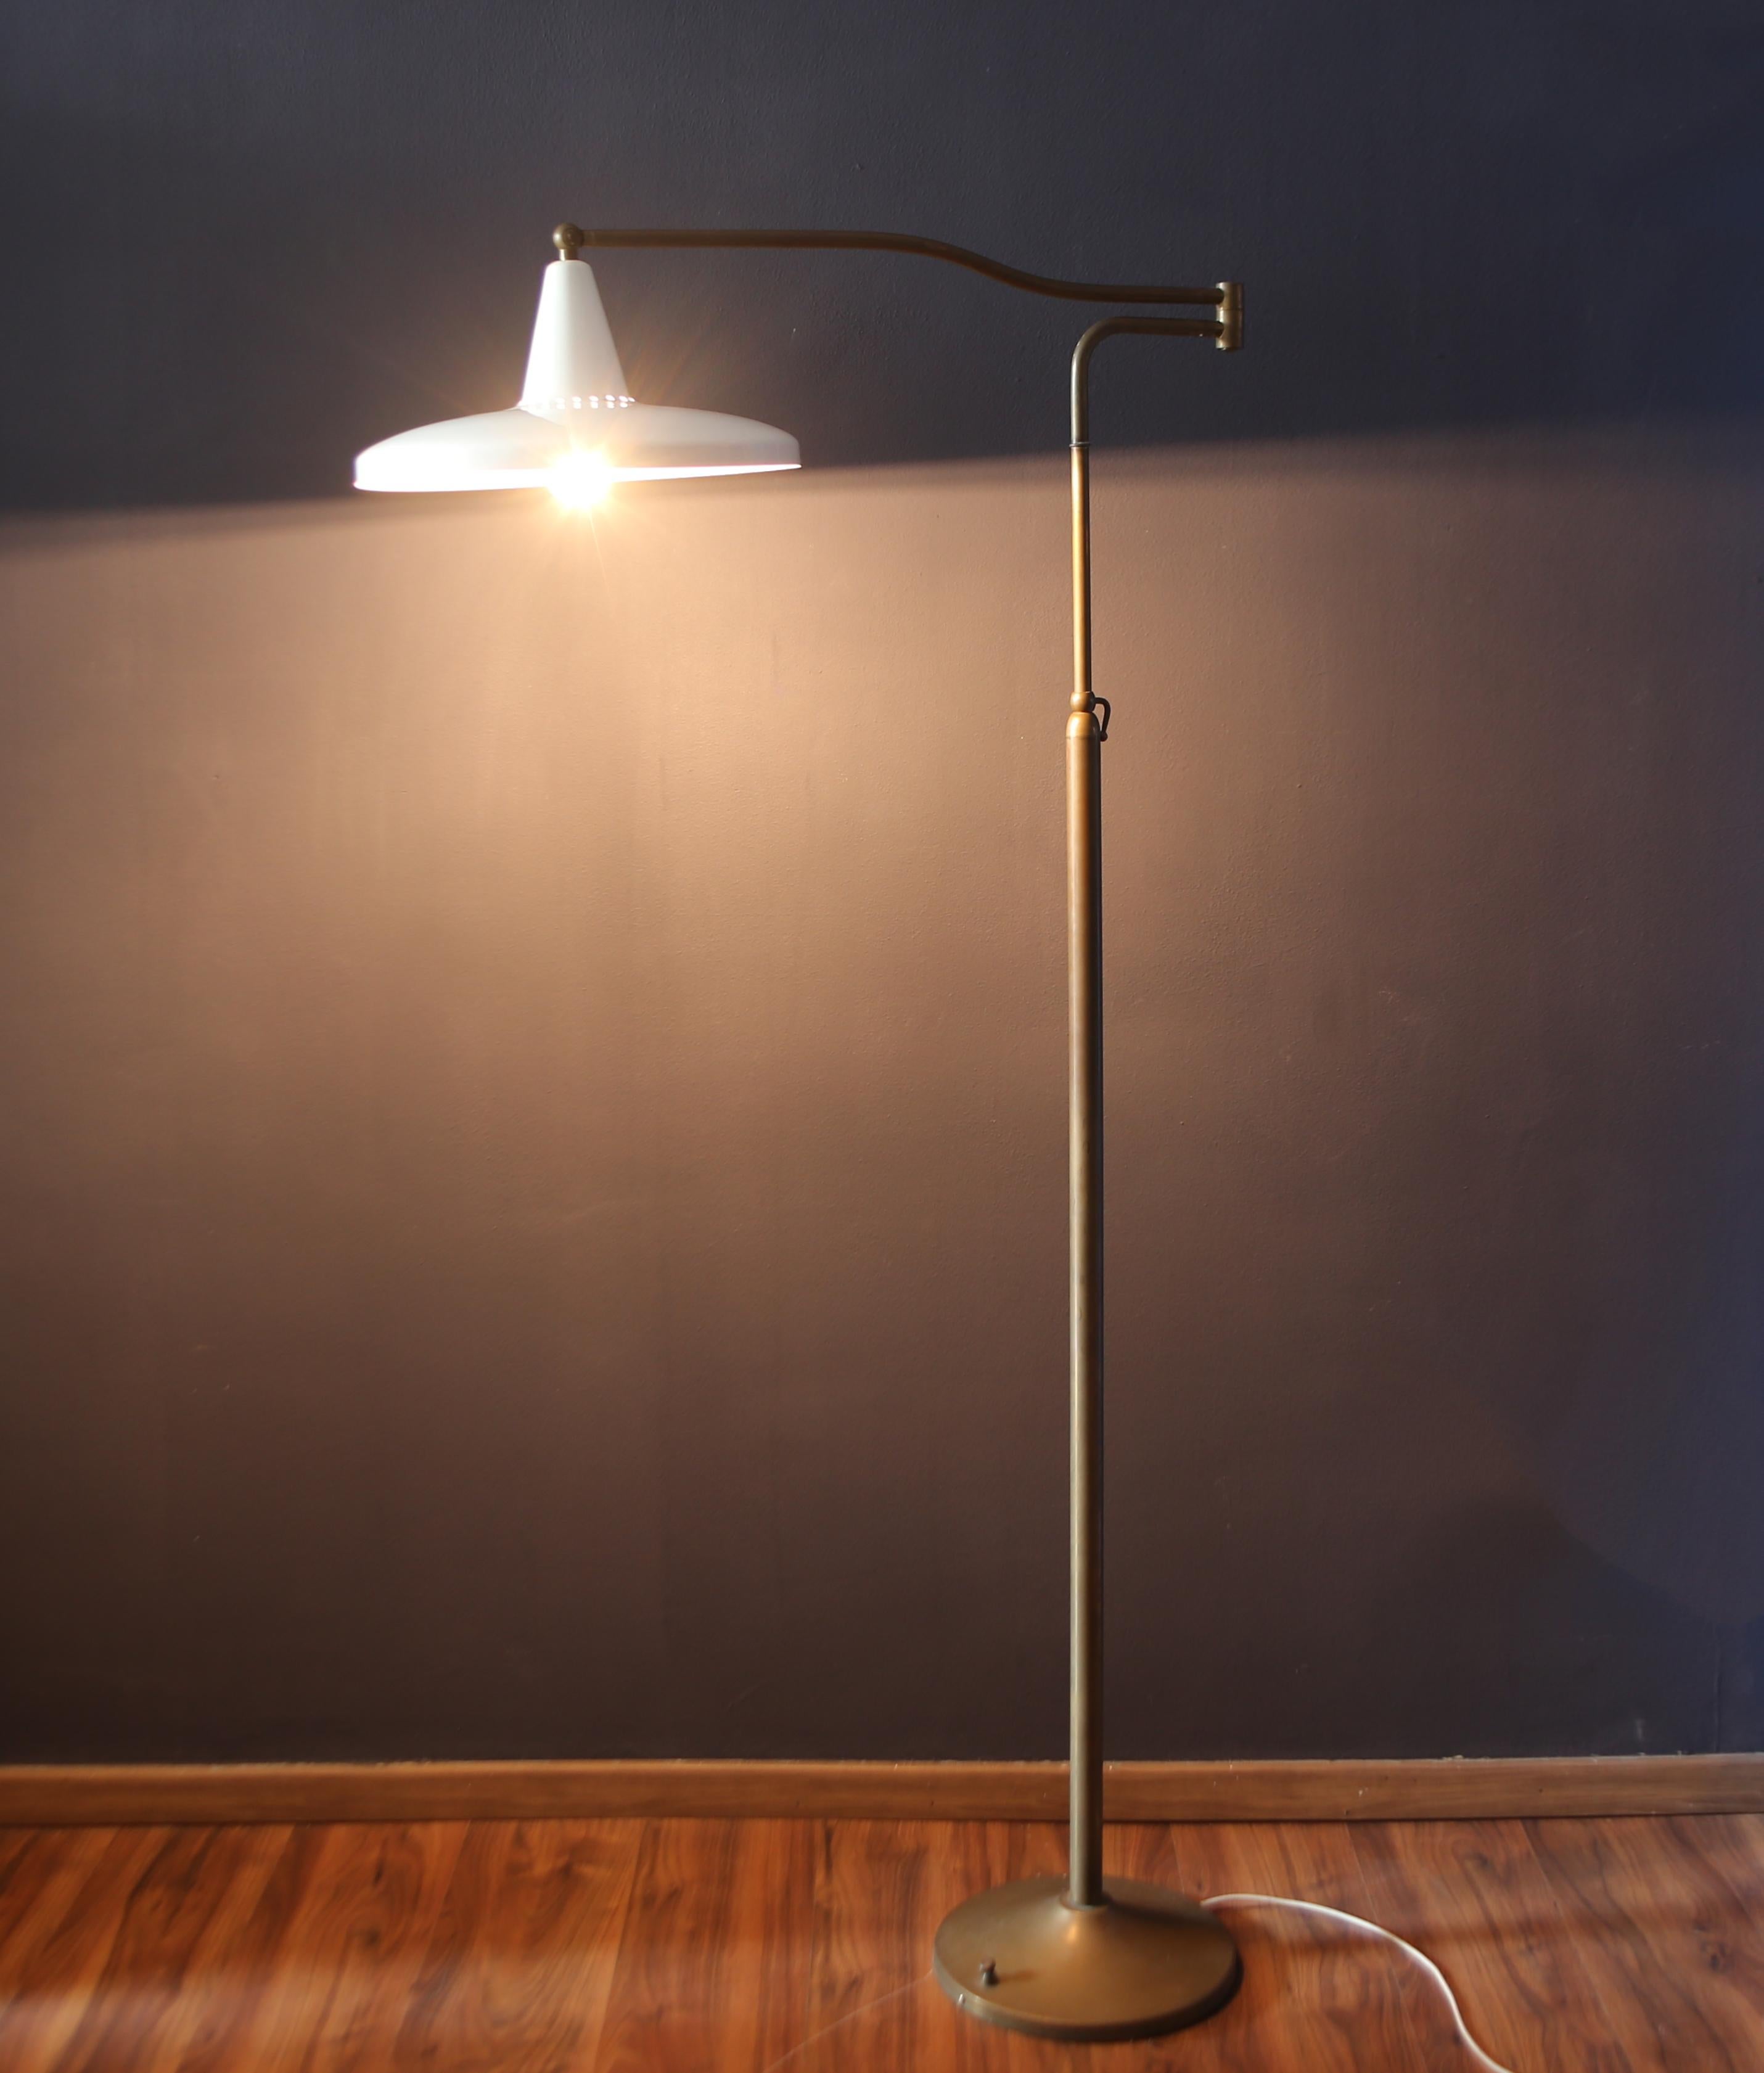 Lese-Stehleuchte aus weiß lackiertem Metall und Messing. Ideal für Leseecken. Diese Lampe stammt aus den frühen 1950er Jahren. Diese Lampe hat eine maximale Höhe von 207 cm und eine Länge von 96 cm.